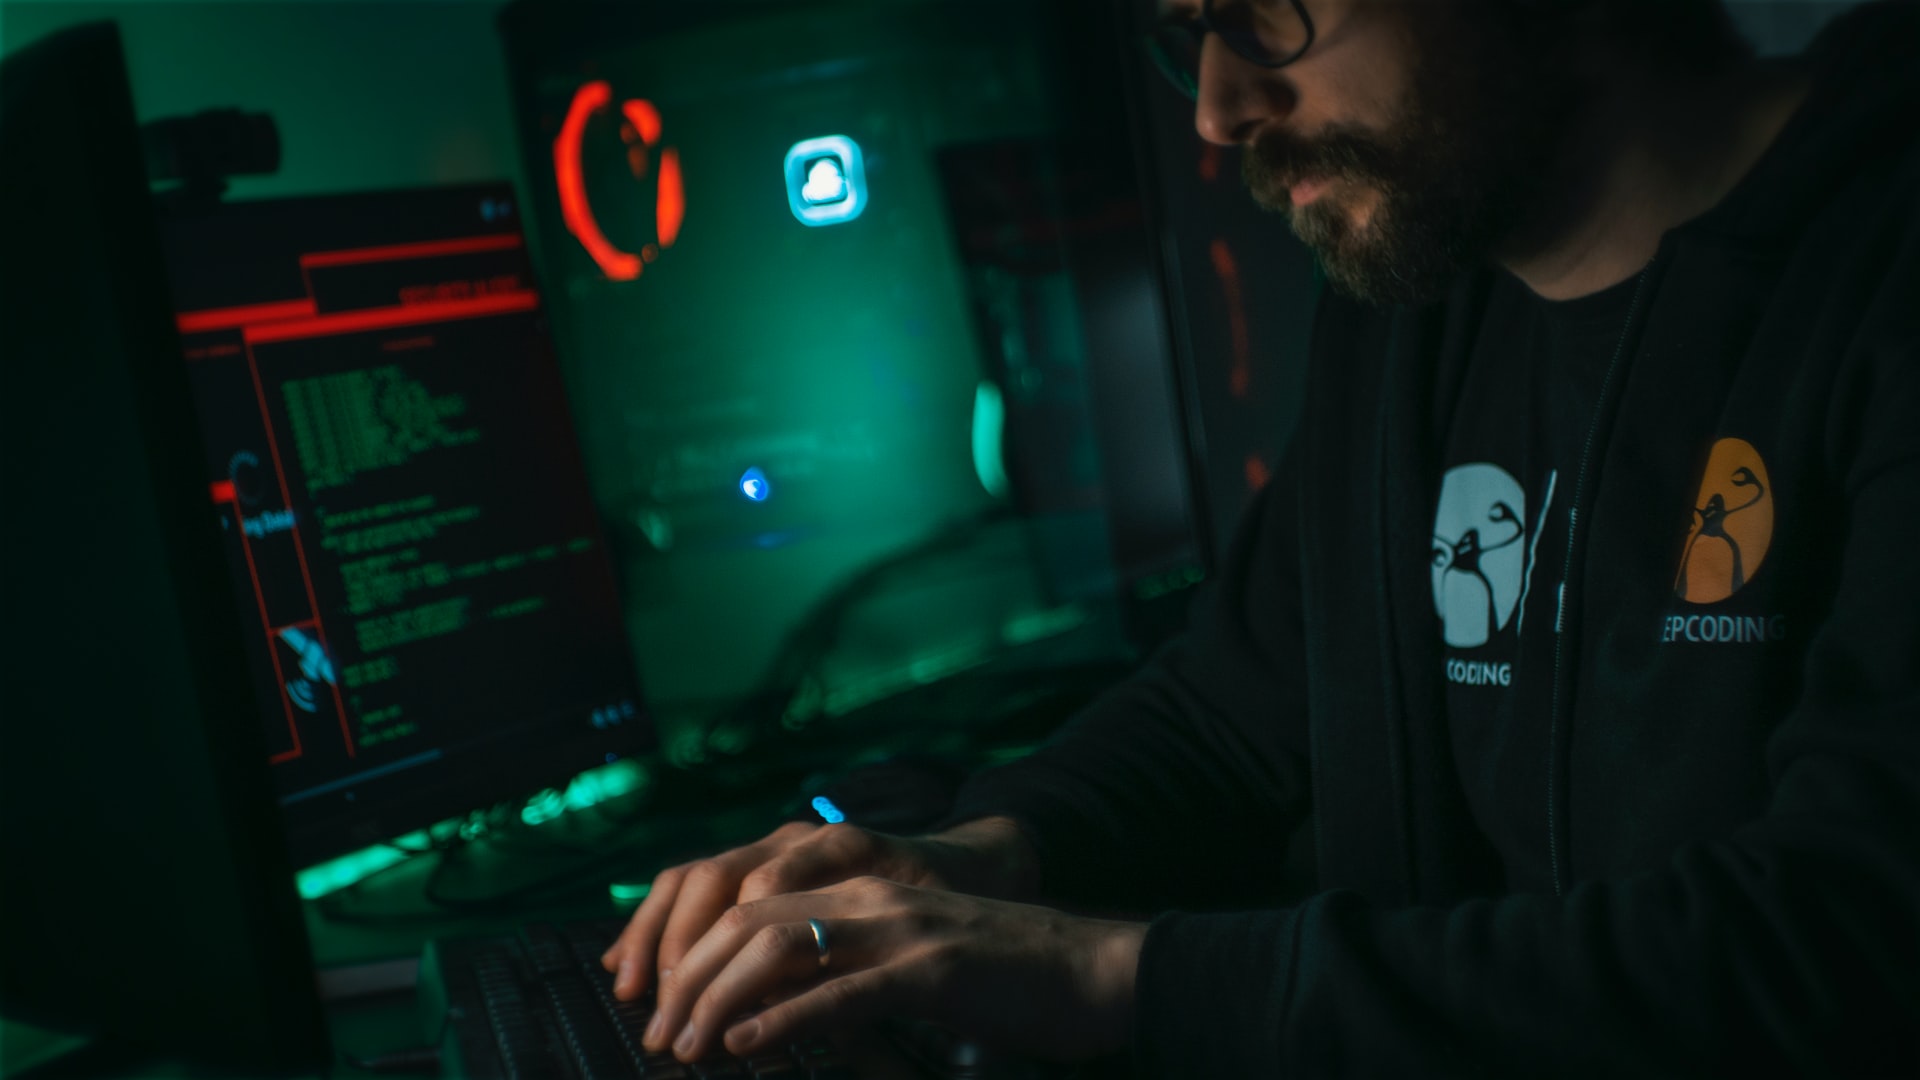 Mężczyzna siedzi przy komputerze w ciemnym otoczeniu.